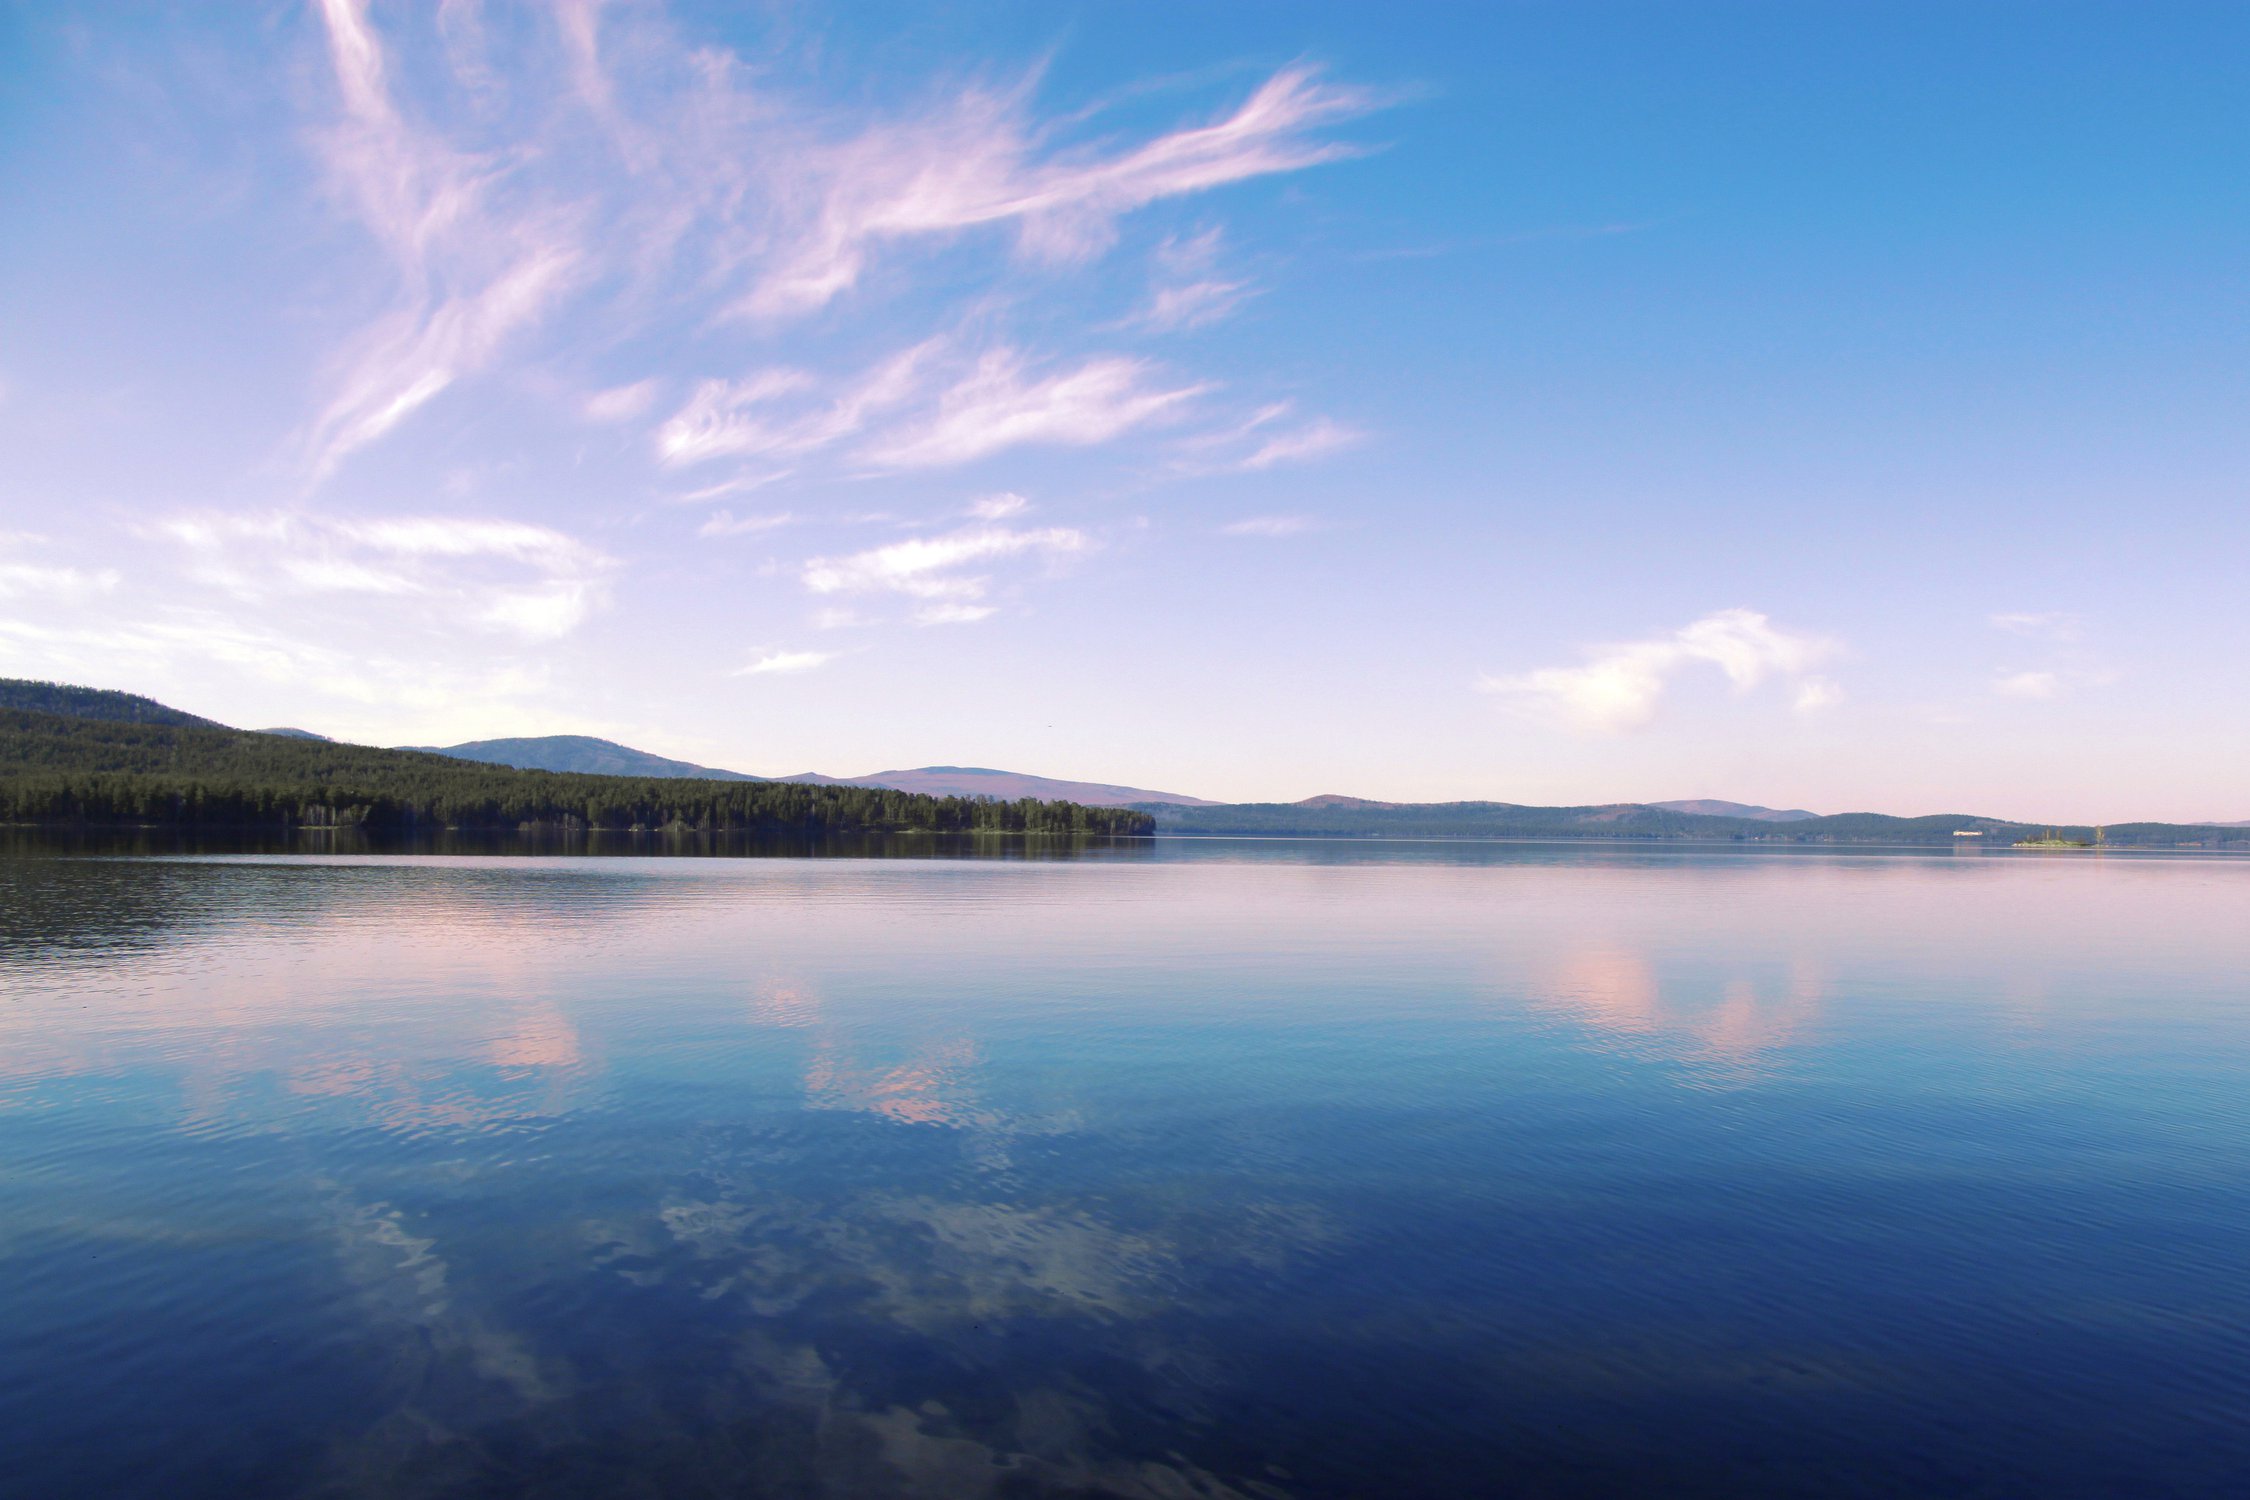 Озеро тургояк кратко